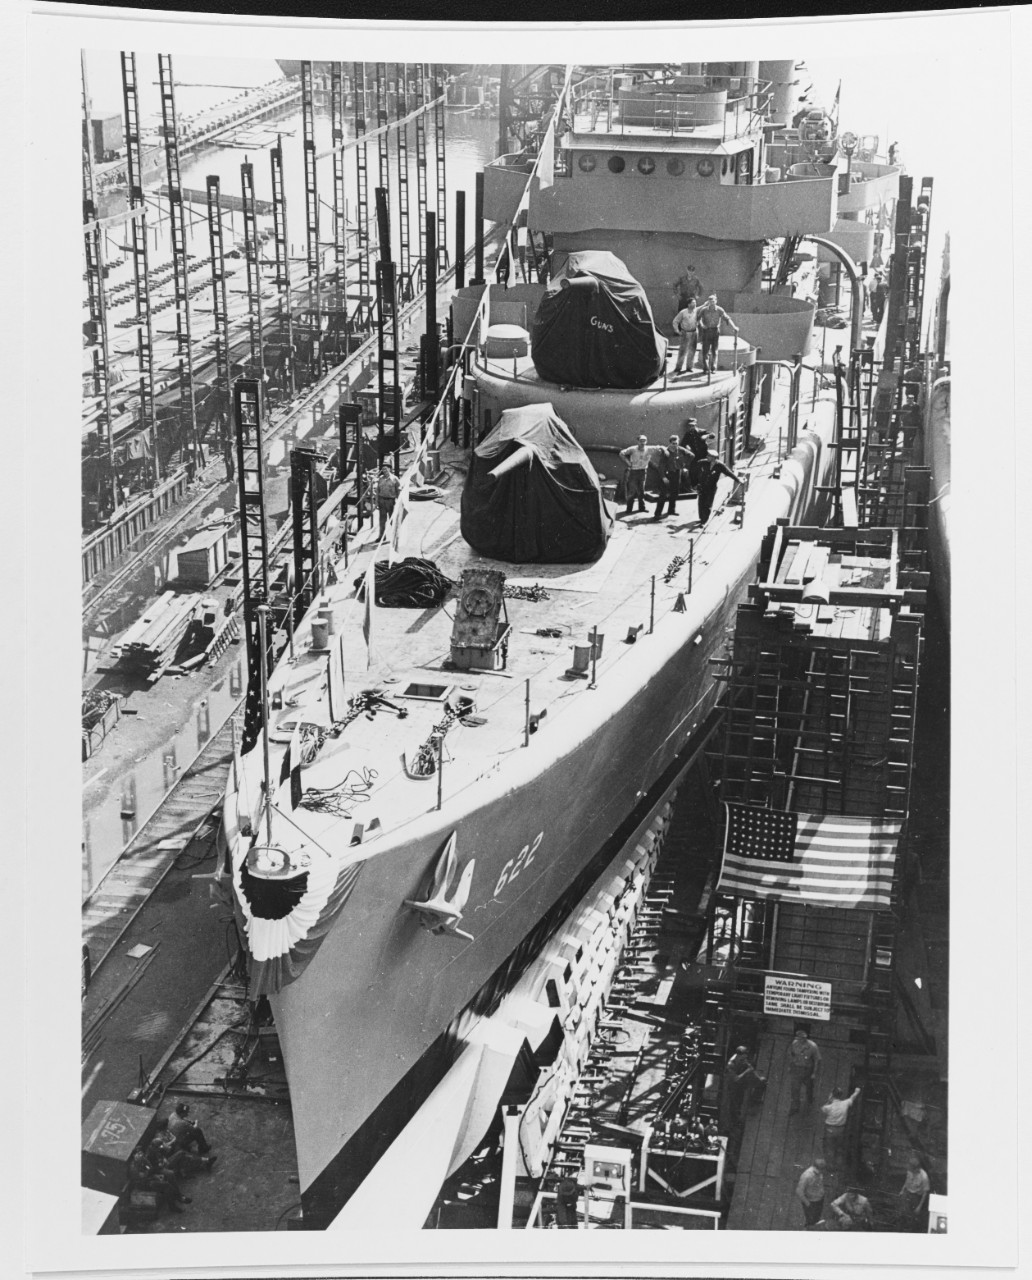 USS MADDOX (DD-622)